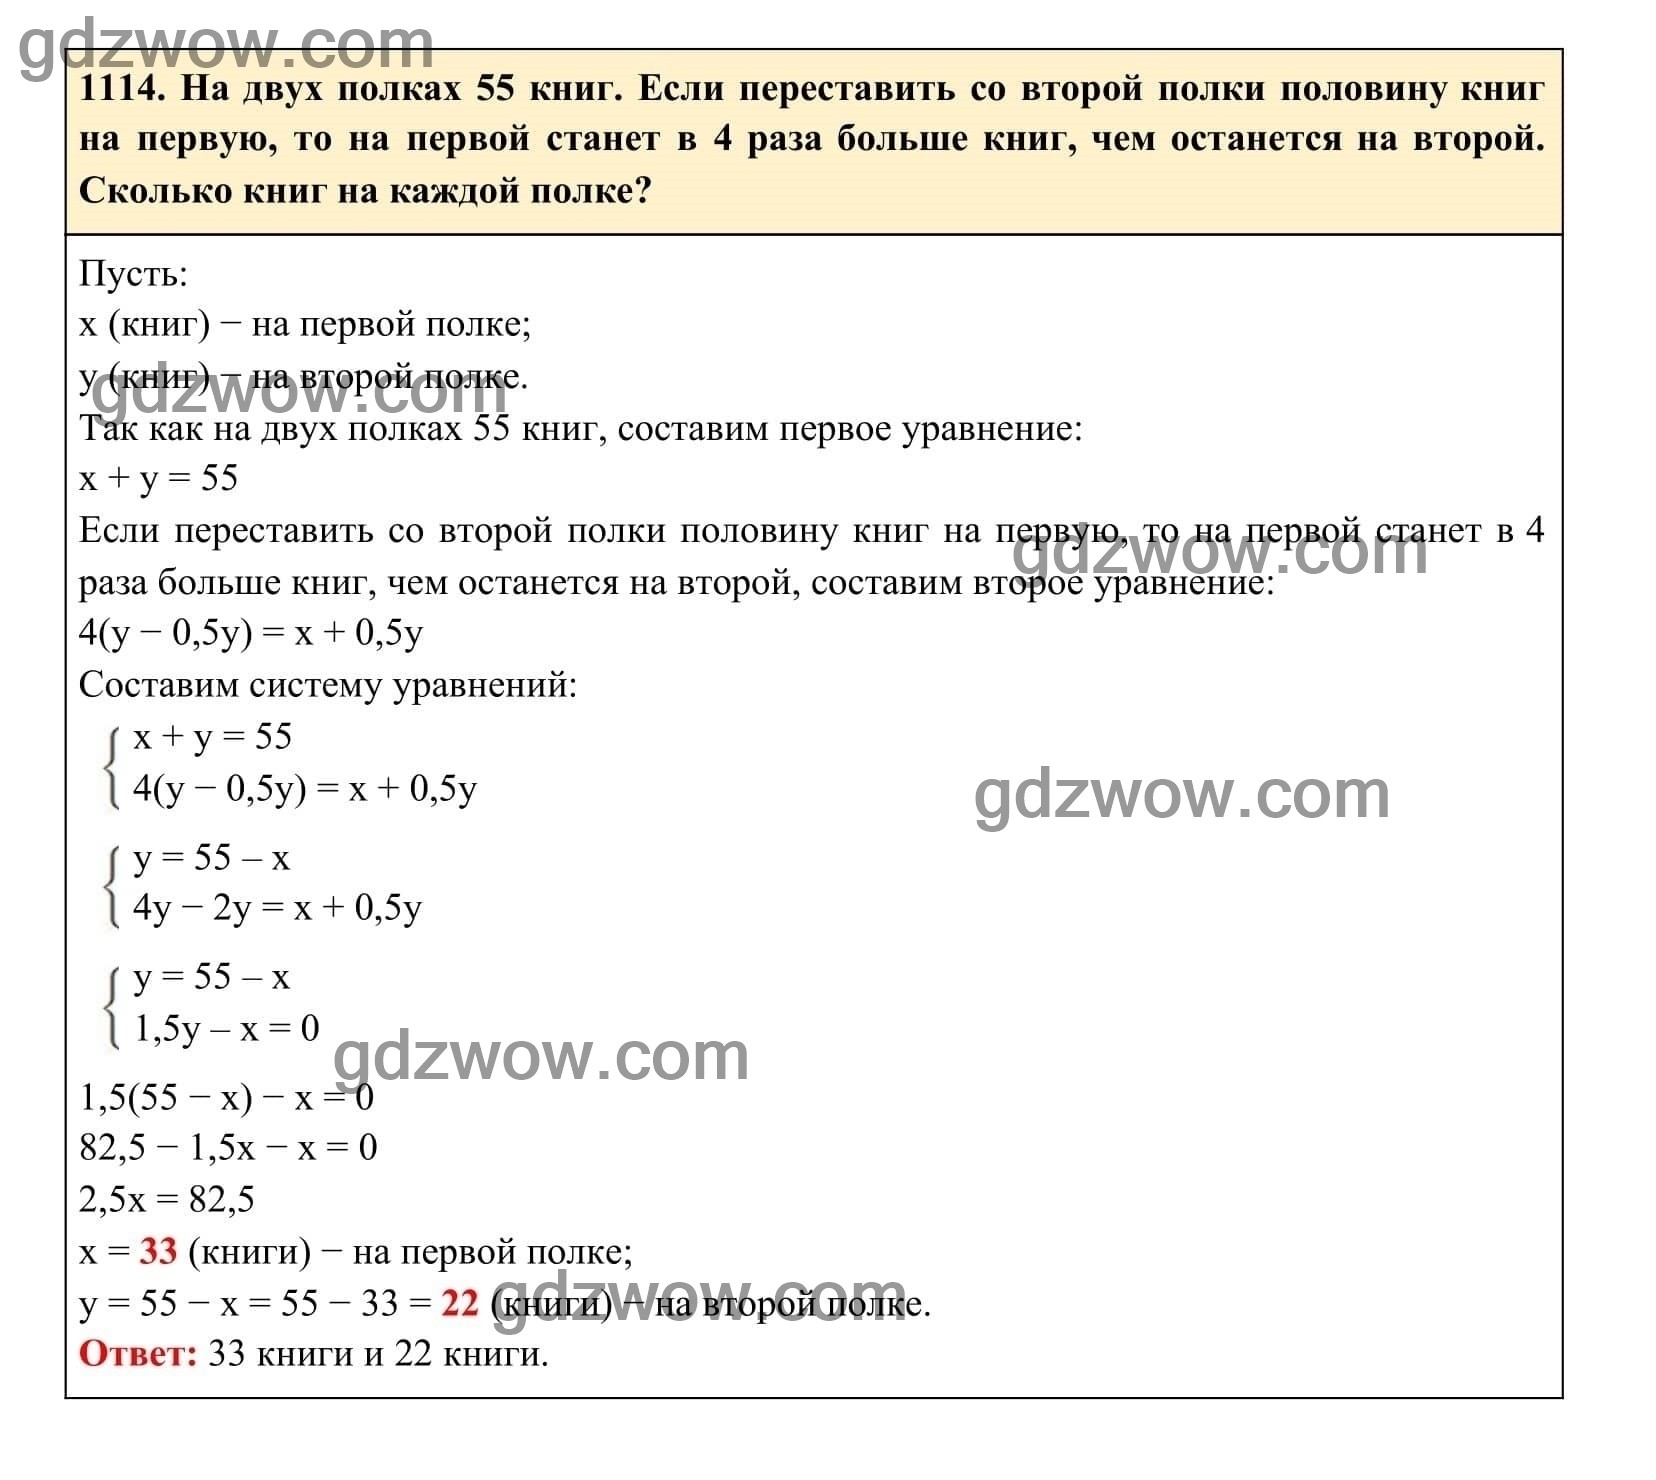 Упражнение 1114 - ГДЗ по Алгебре 7 класс Учебник Макарычев (решебник) - GDZwow